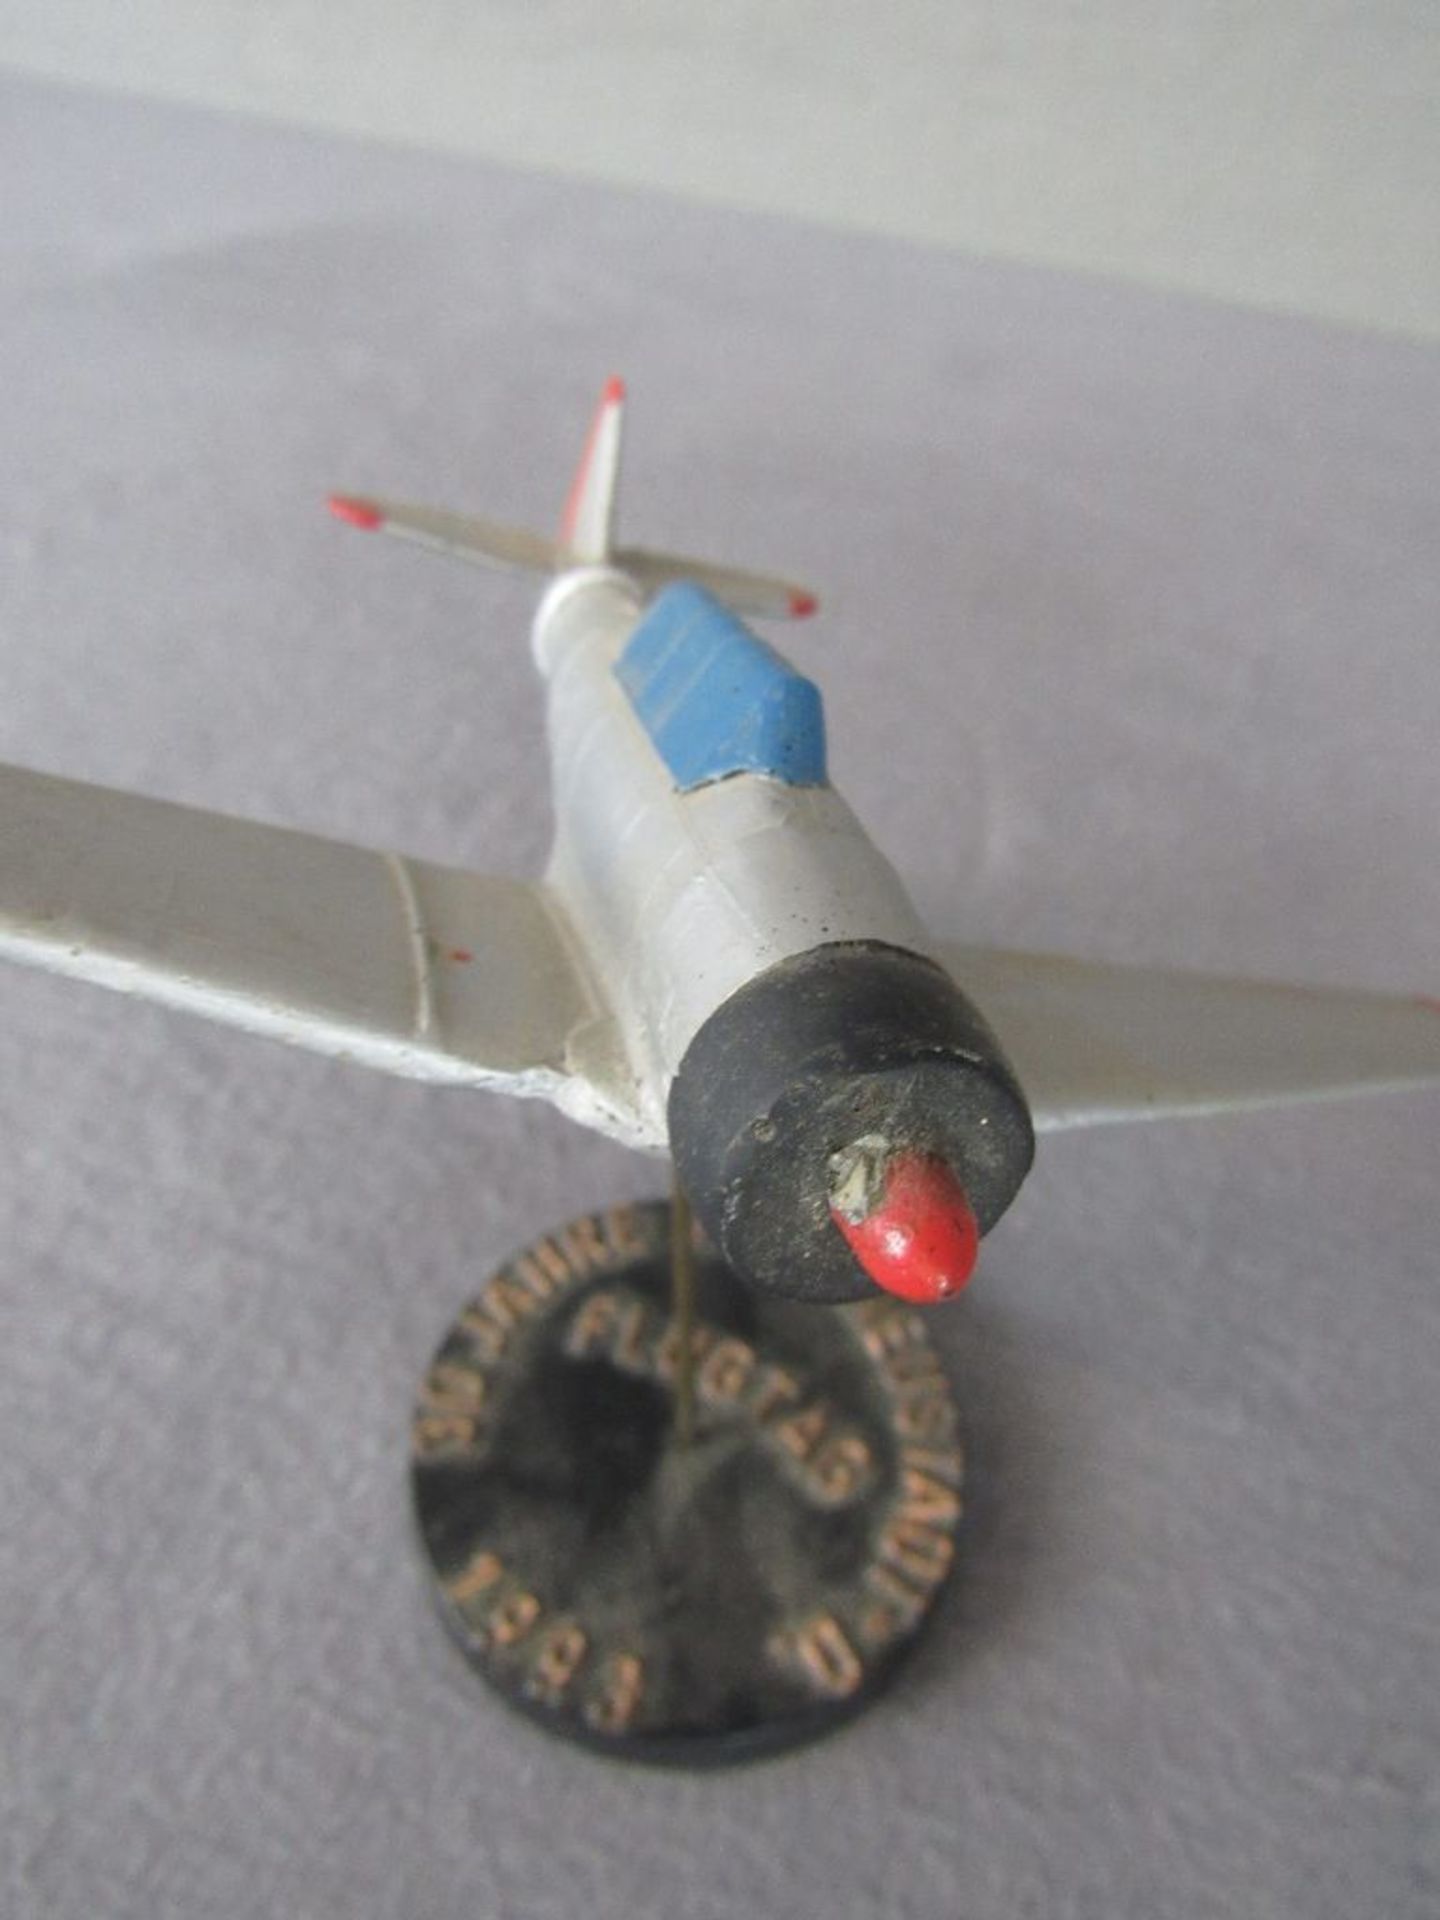 Schreibtischdekoration Modellflugzeug Durchmesser 18,5cm - Image 3 of 4